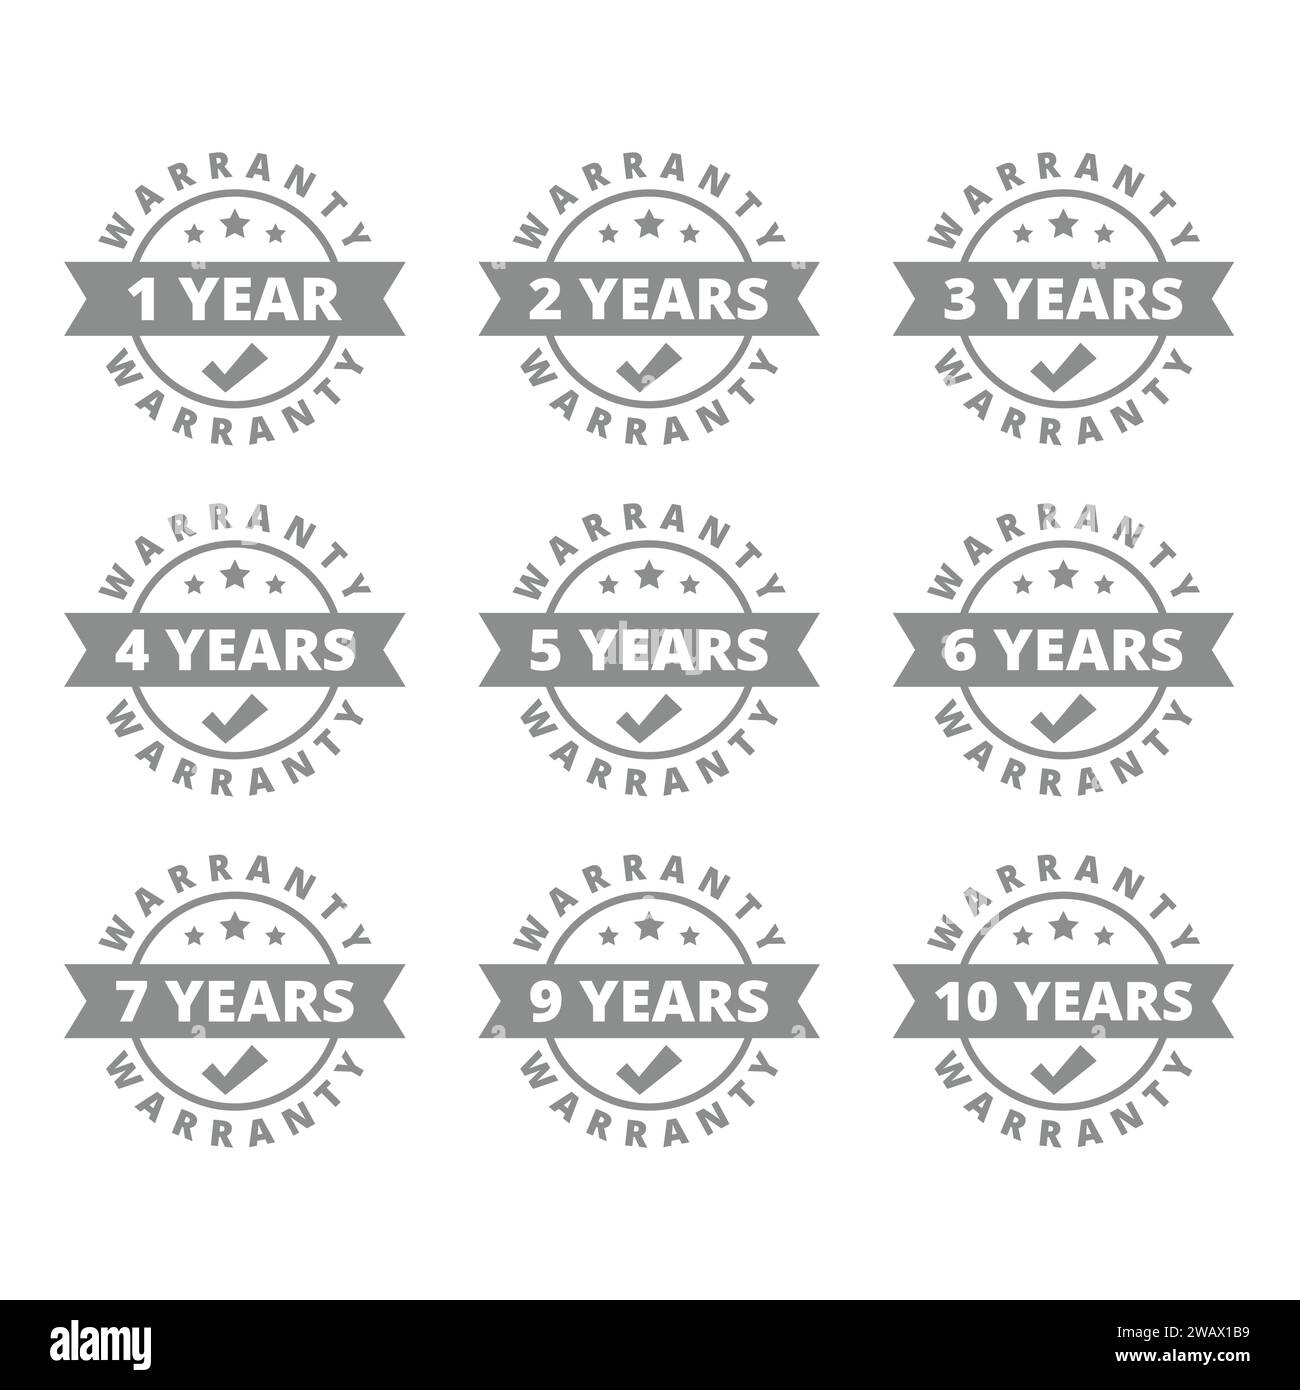 Anno di garanzia set di etichette vettoriali. 1,3,5 anni di garanzia etichette circolari. Illustrazione Vettoriale